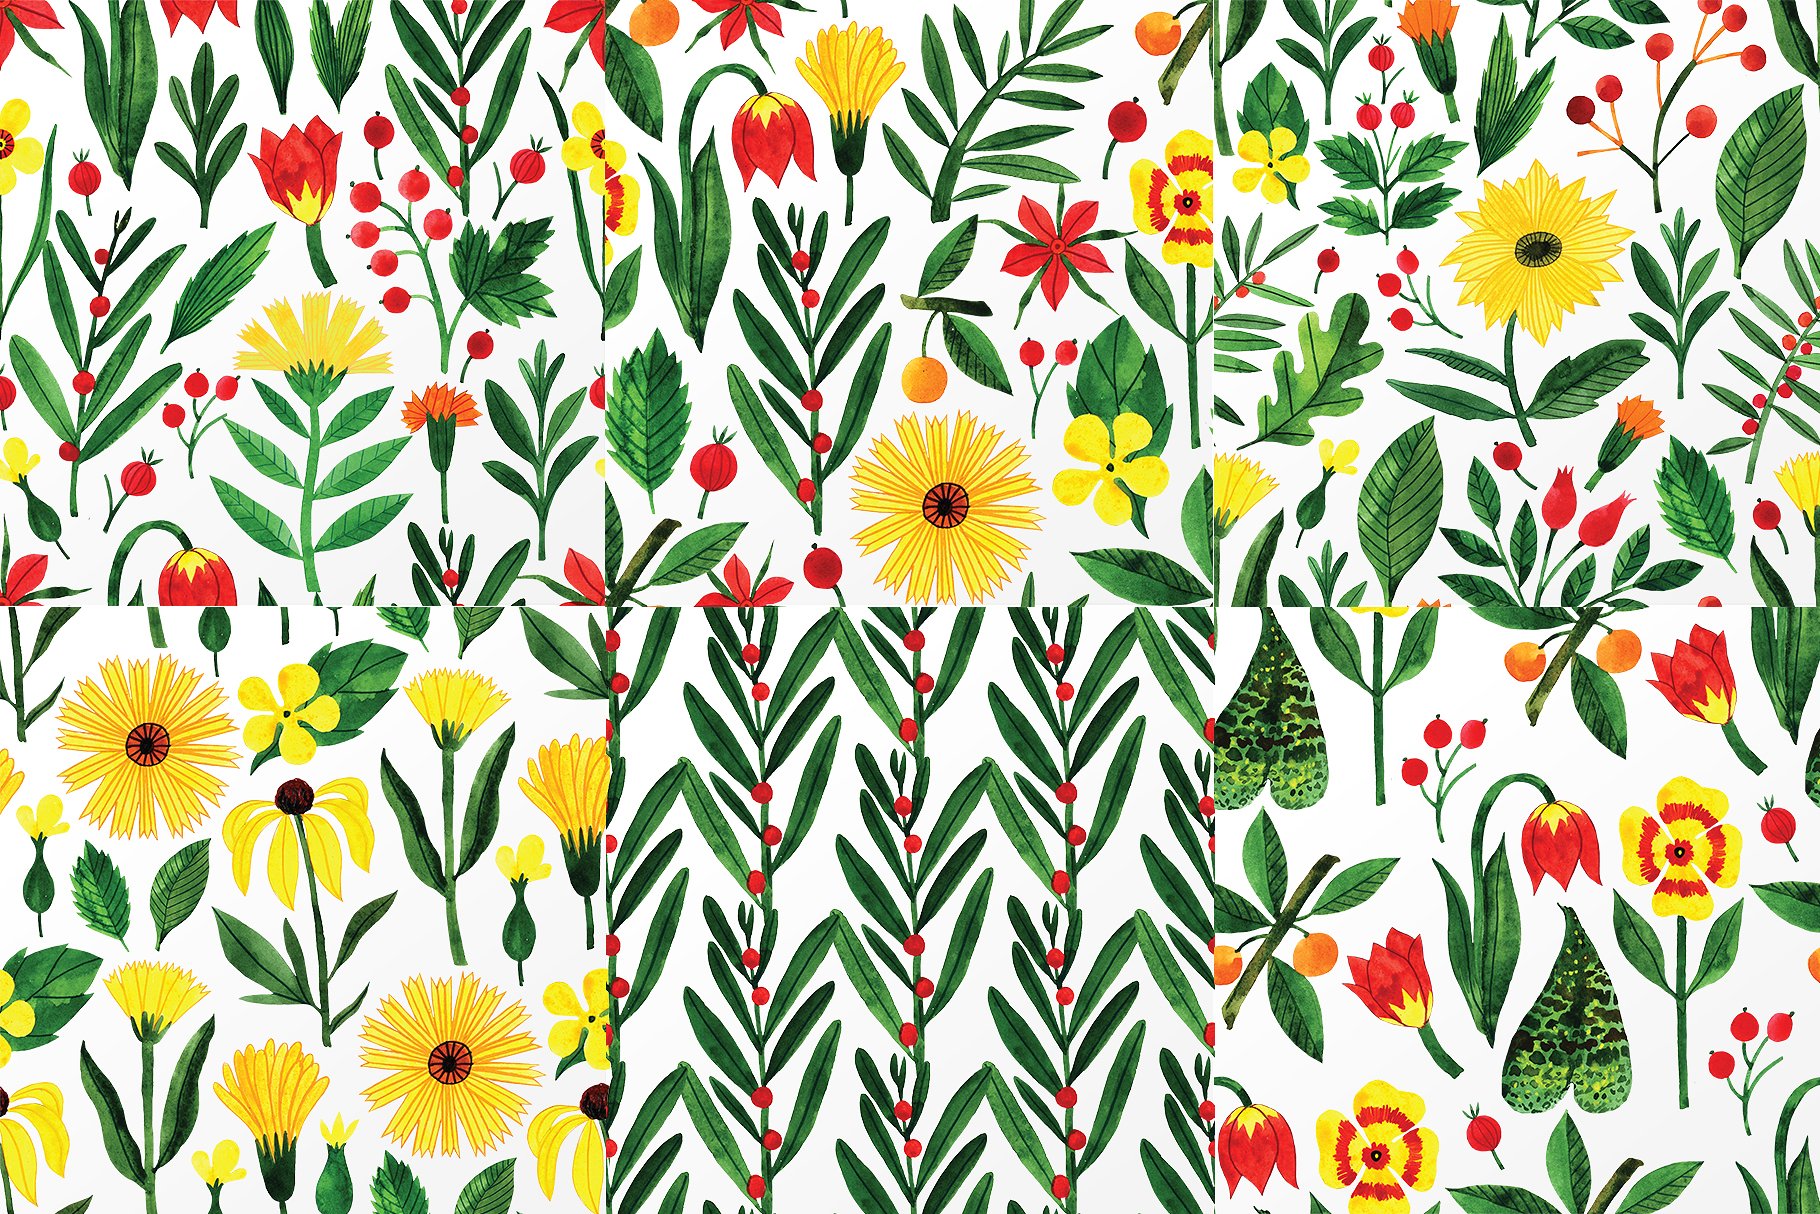 彩色铅笔绘制的花朵元素图案集 Botanic Watercolor Collection插图6